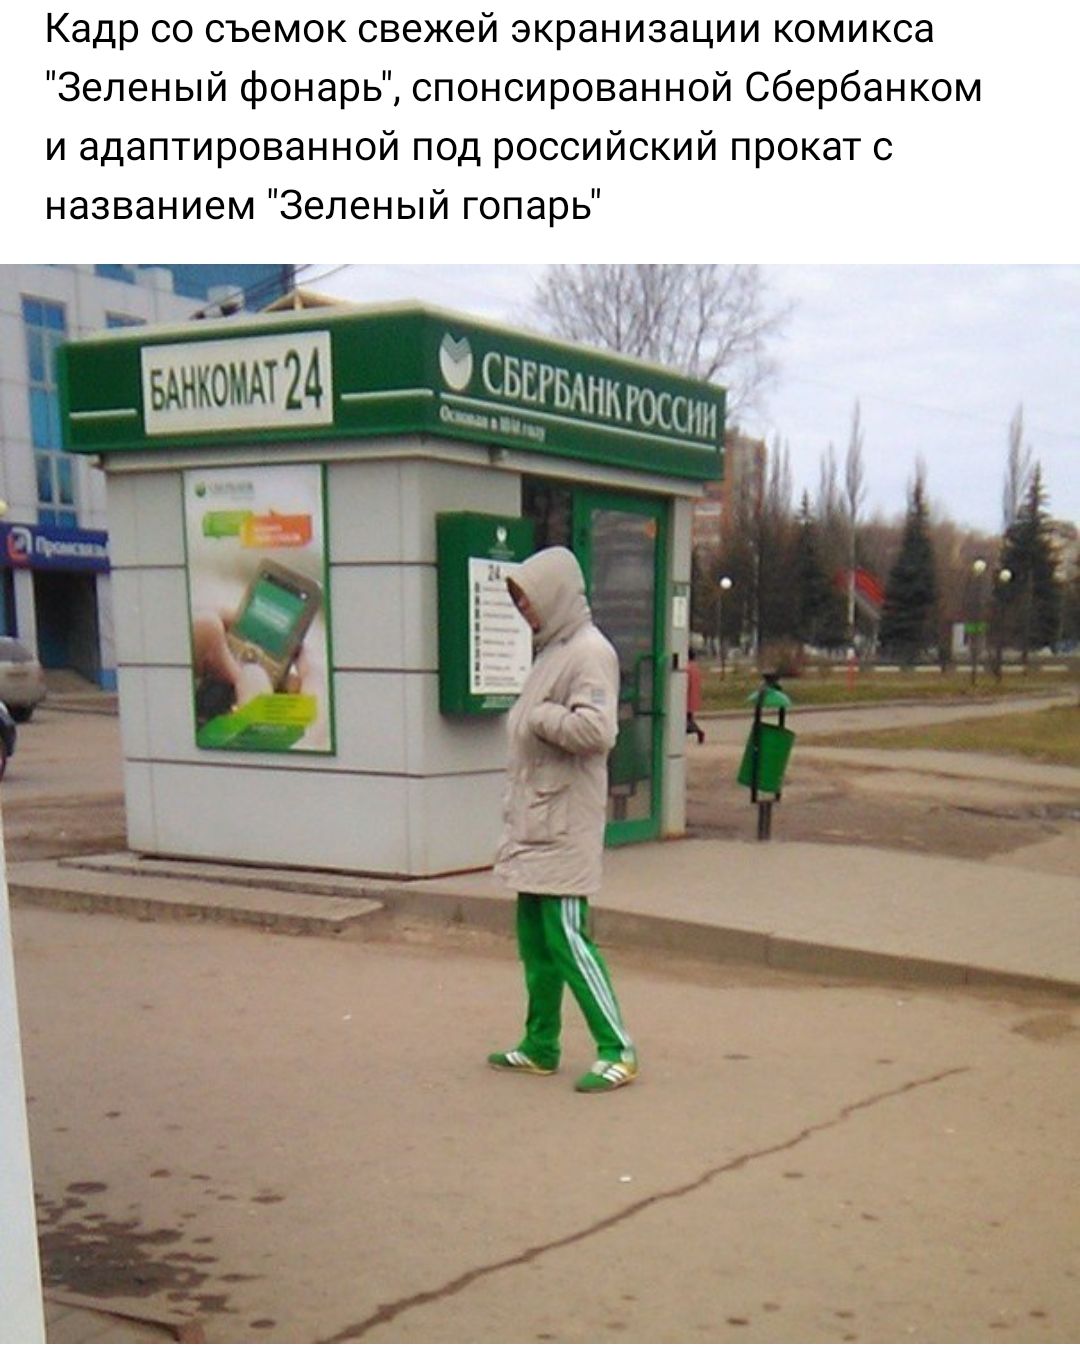 Картинки Сбербанка России смешные